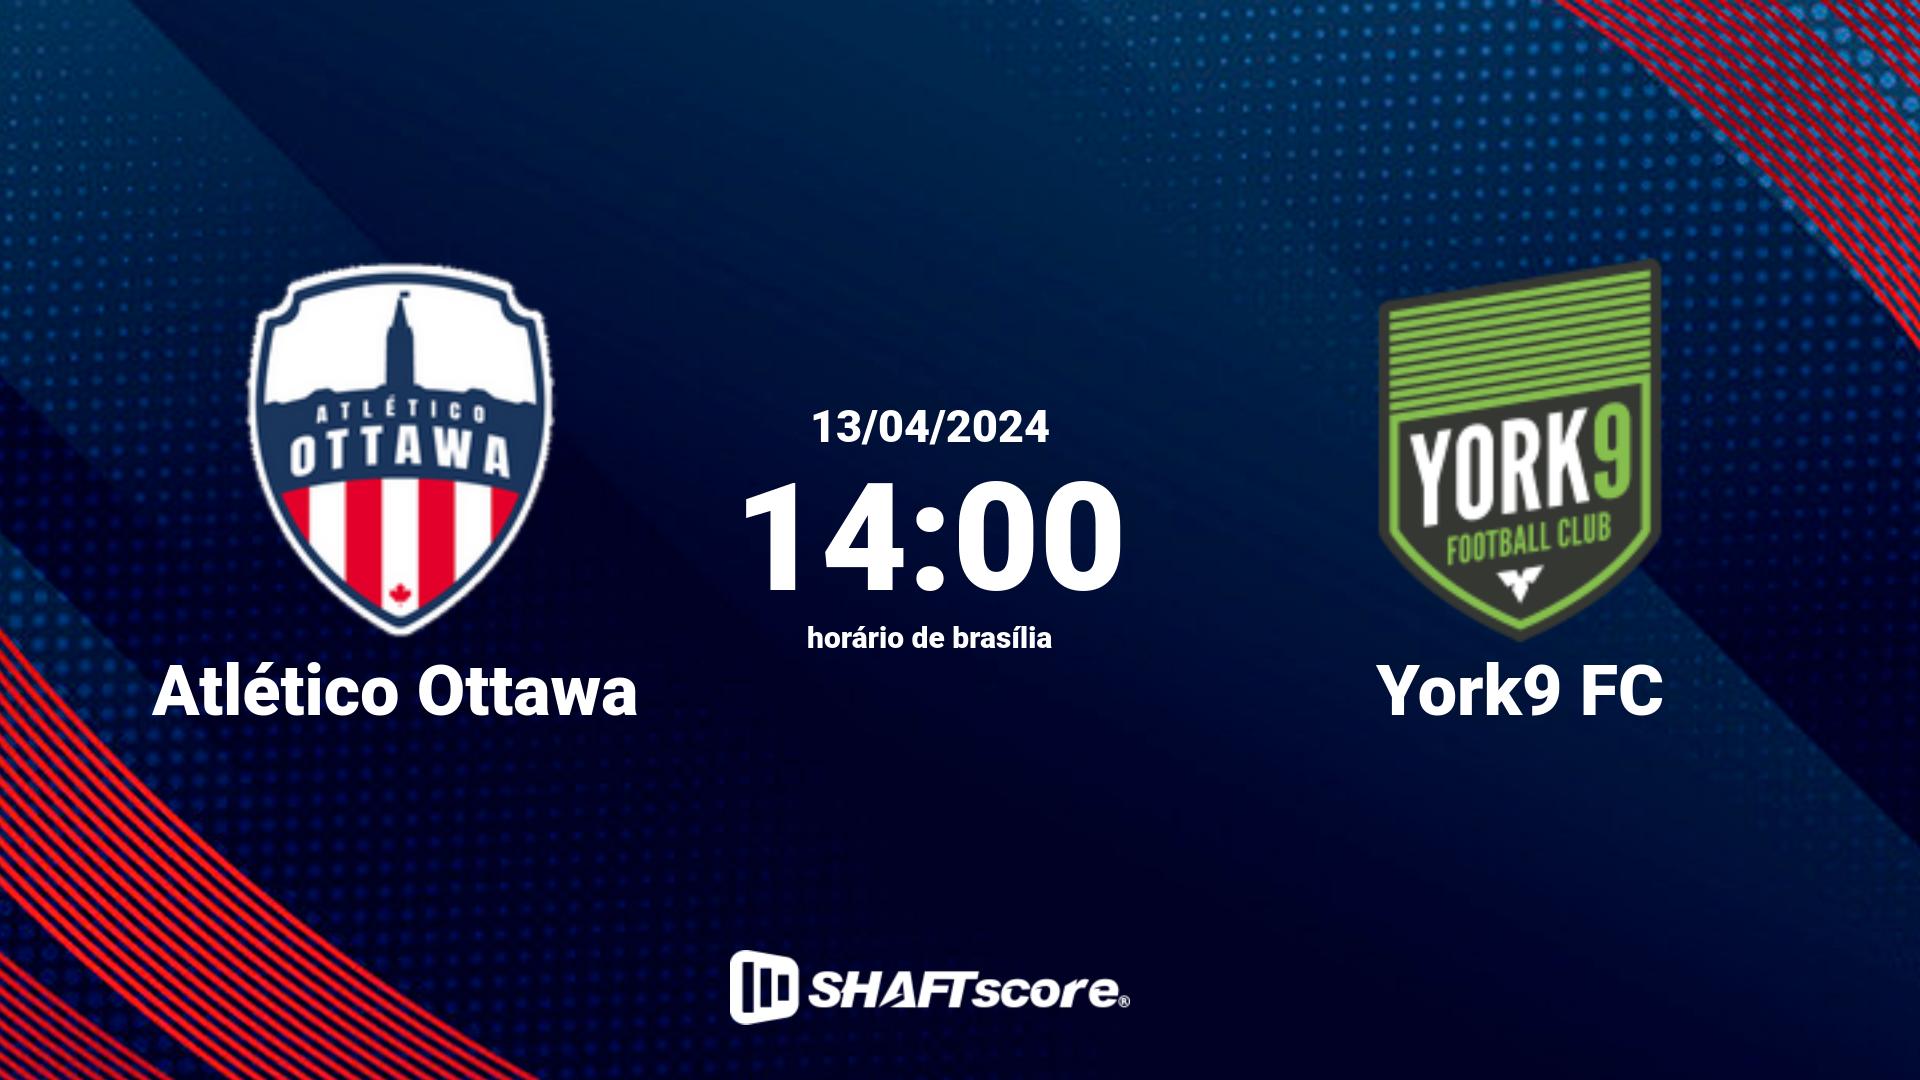 Estatísticas do jogo Atlético Ottawa vs York9 FC 13.04 14:00